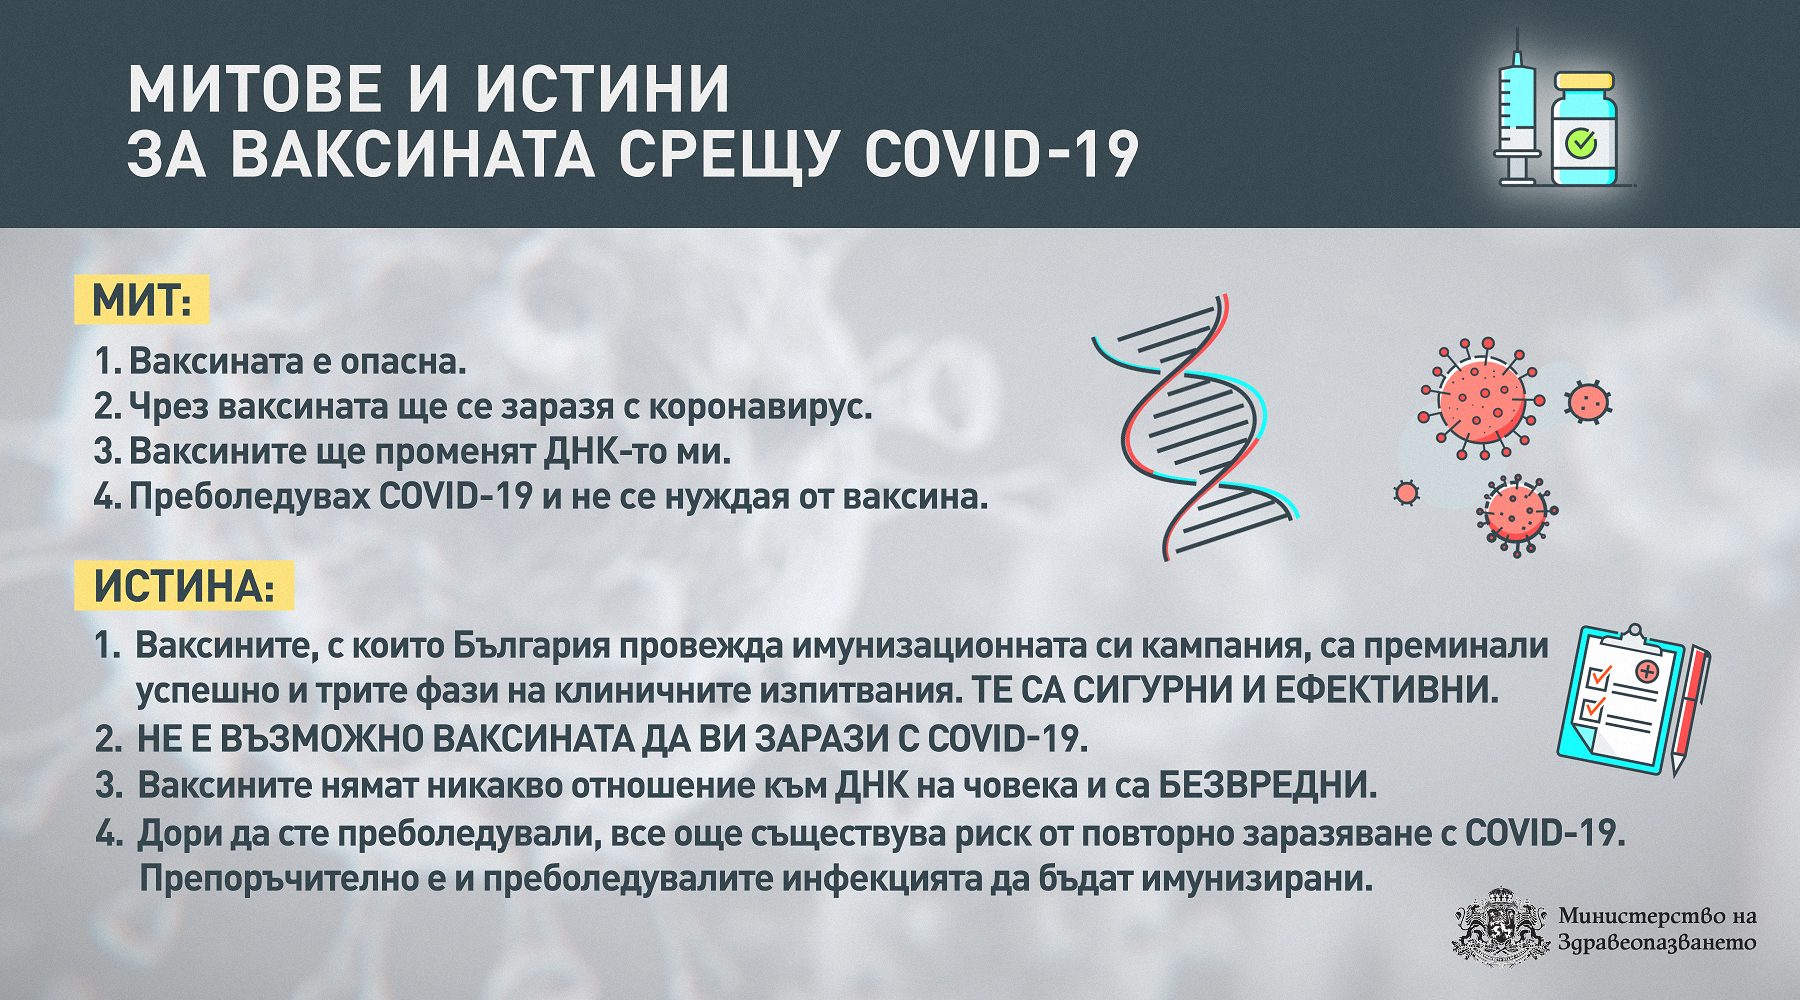 Митове и истини за ваксините срещу COVID-19